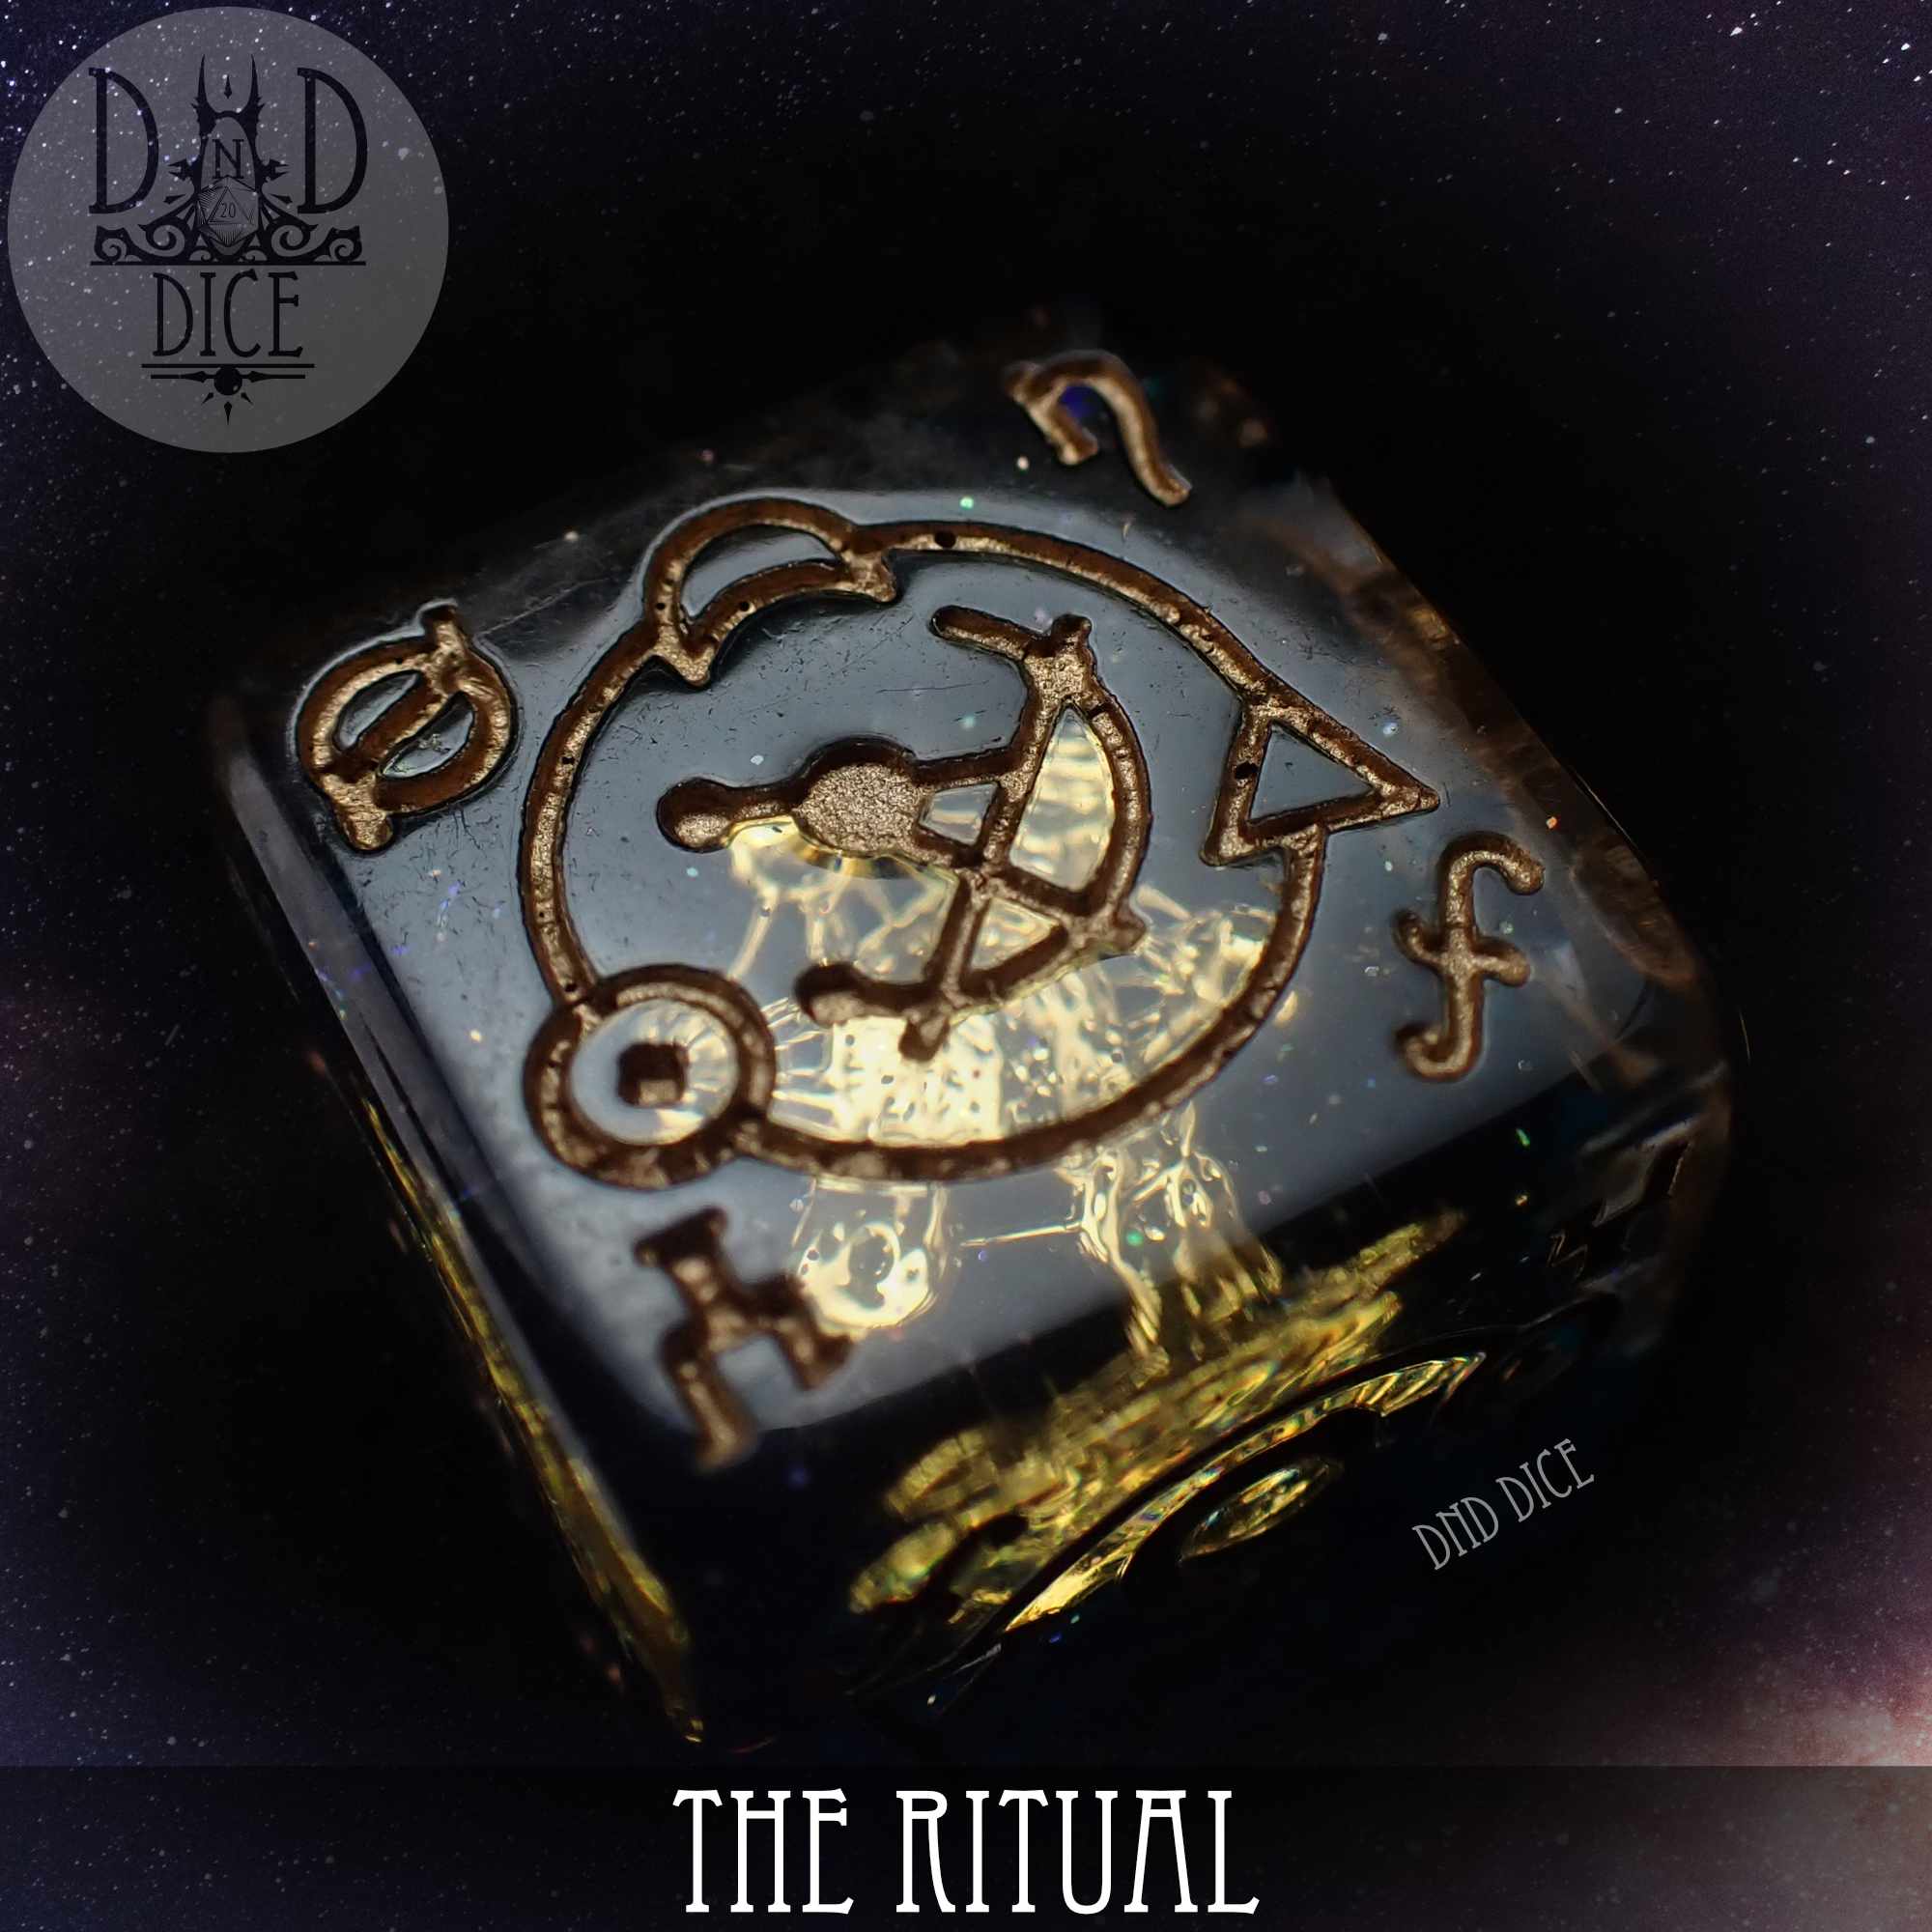 The Ritual 11 Dice Set